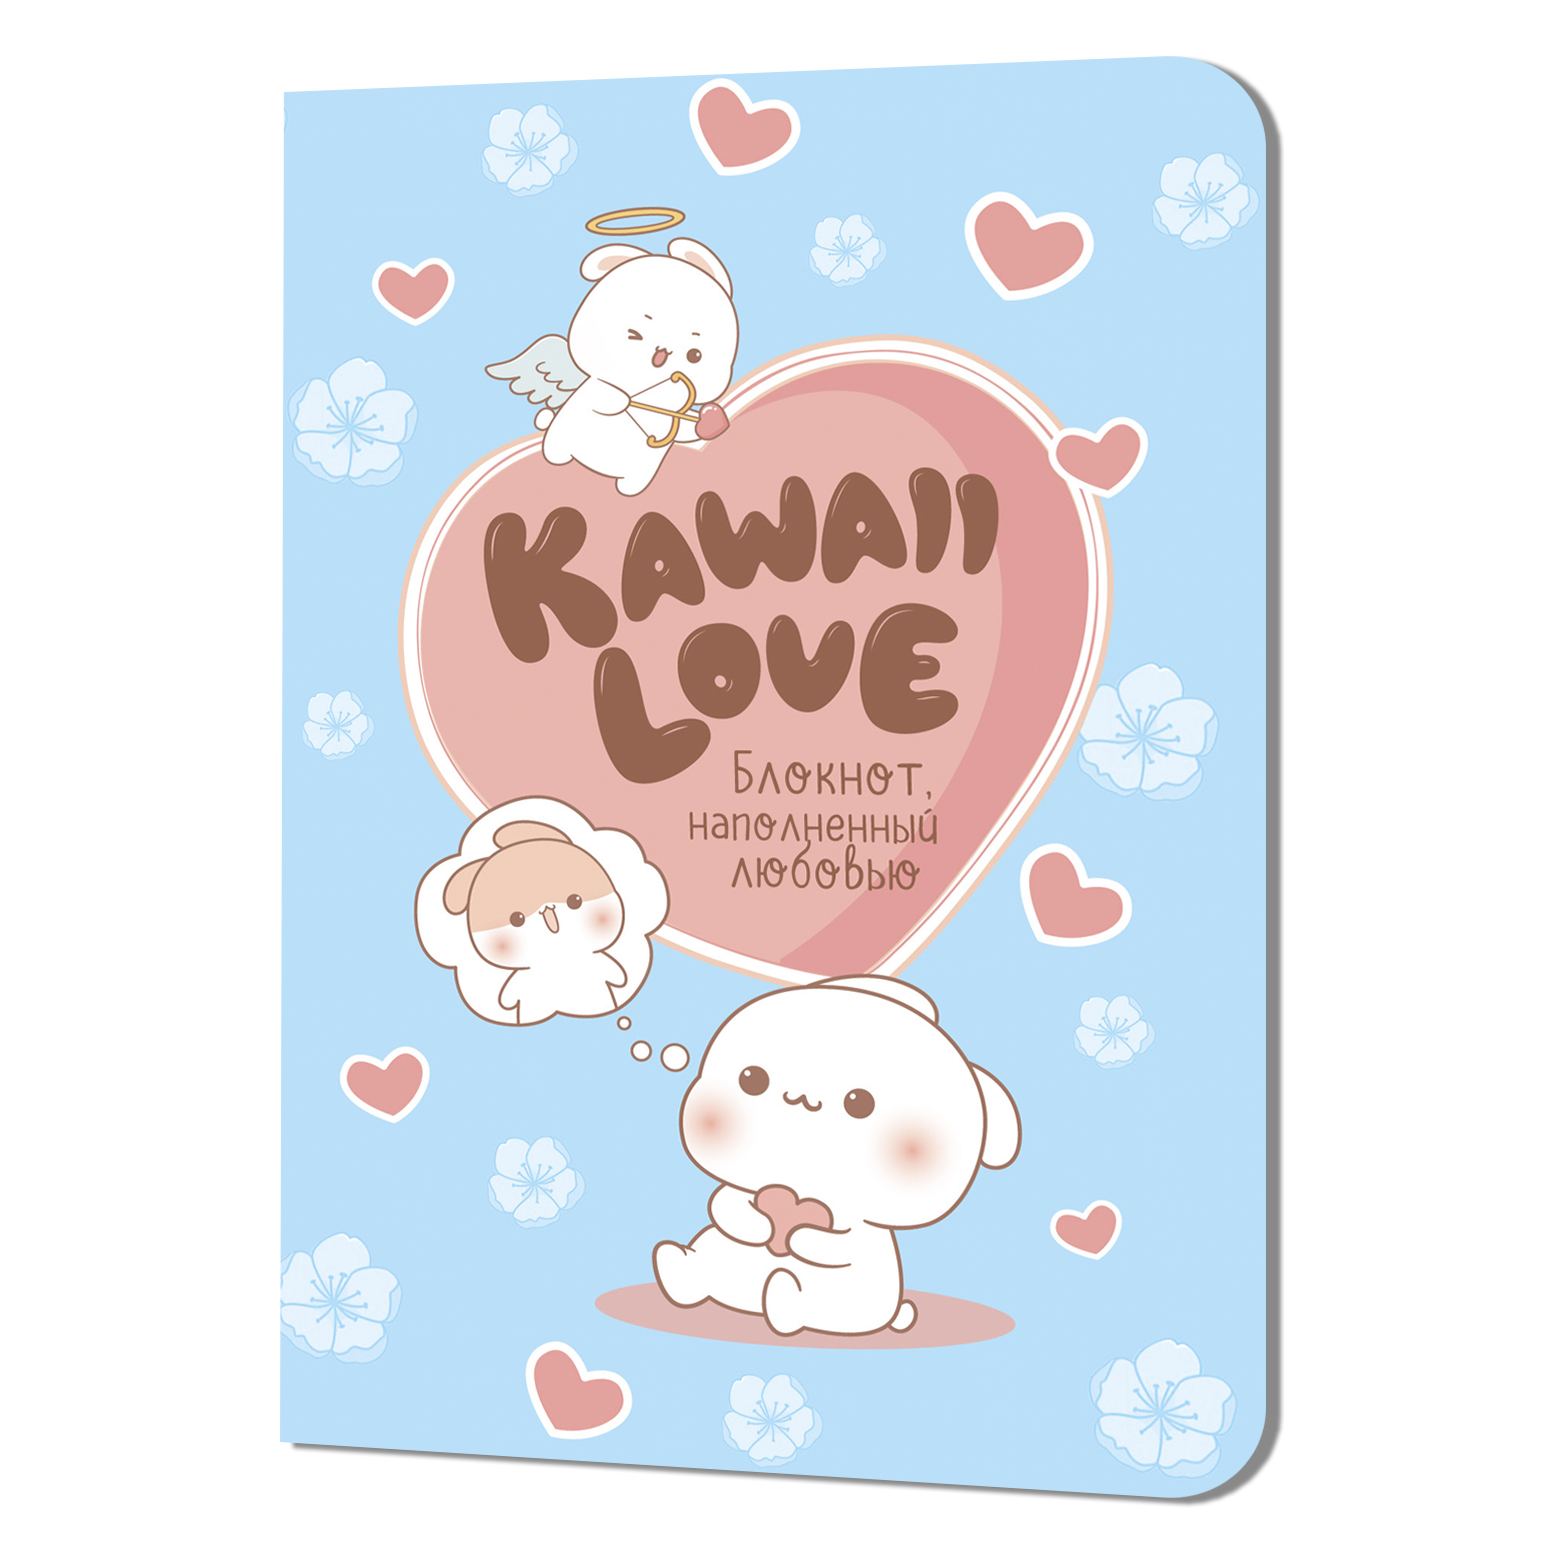 Блокнот kawaii love (розовый) (Копировать)